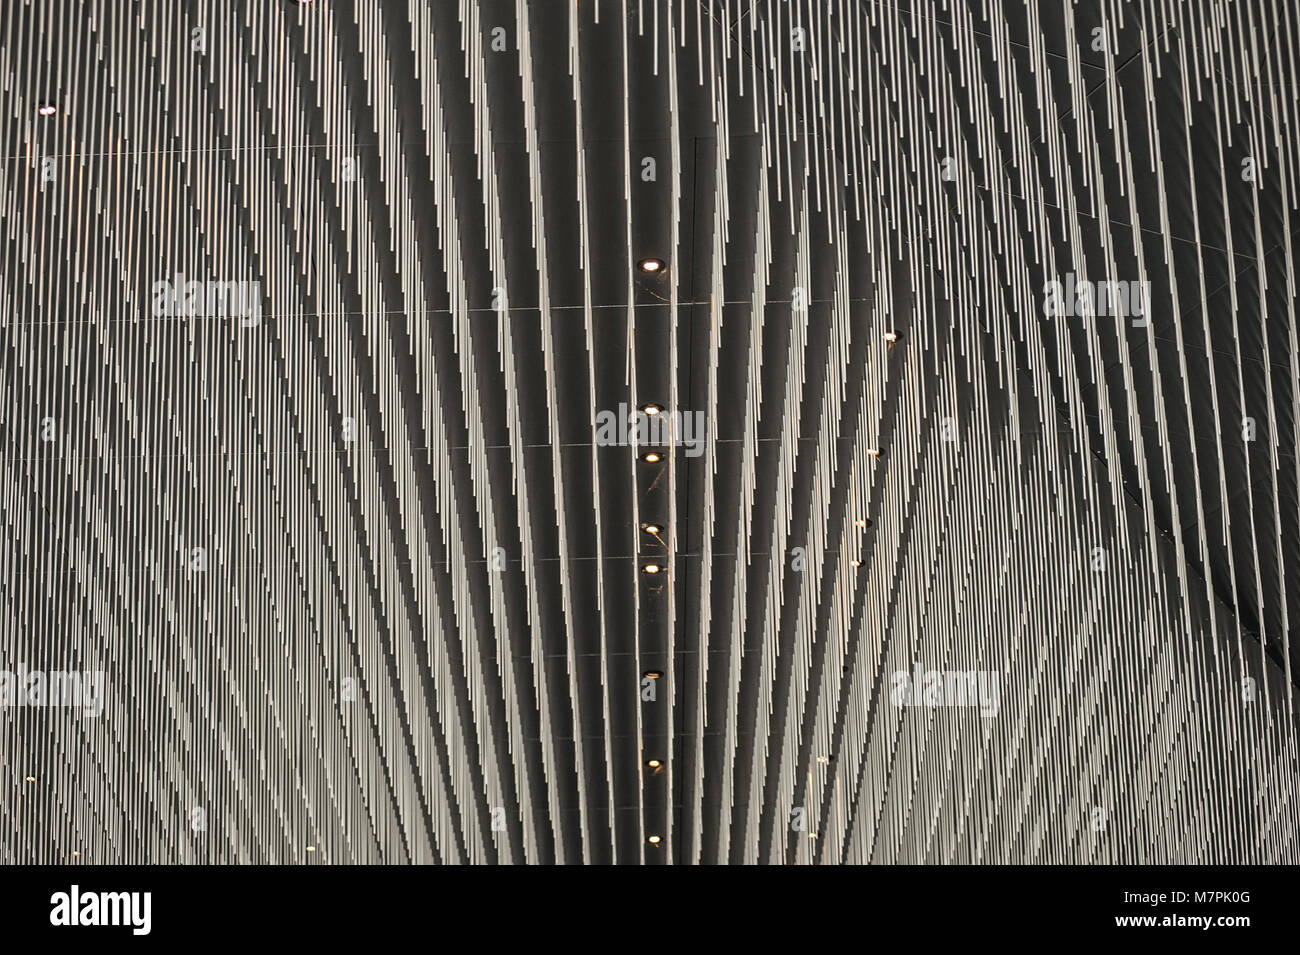 PARIS FRANCE - PHILHARMONIE CITE DE LA MUSIQUE - PARC DE LA VILLETTE - JEAN NOUVEL - BUILDING AND DETAILS - PARIS MUSIC - CONCERT HALL © F.BEAUMONT Stock Photo